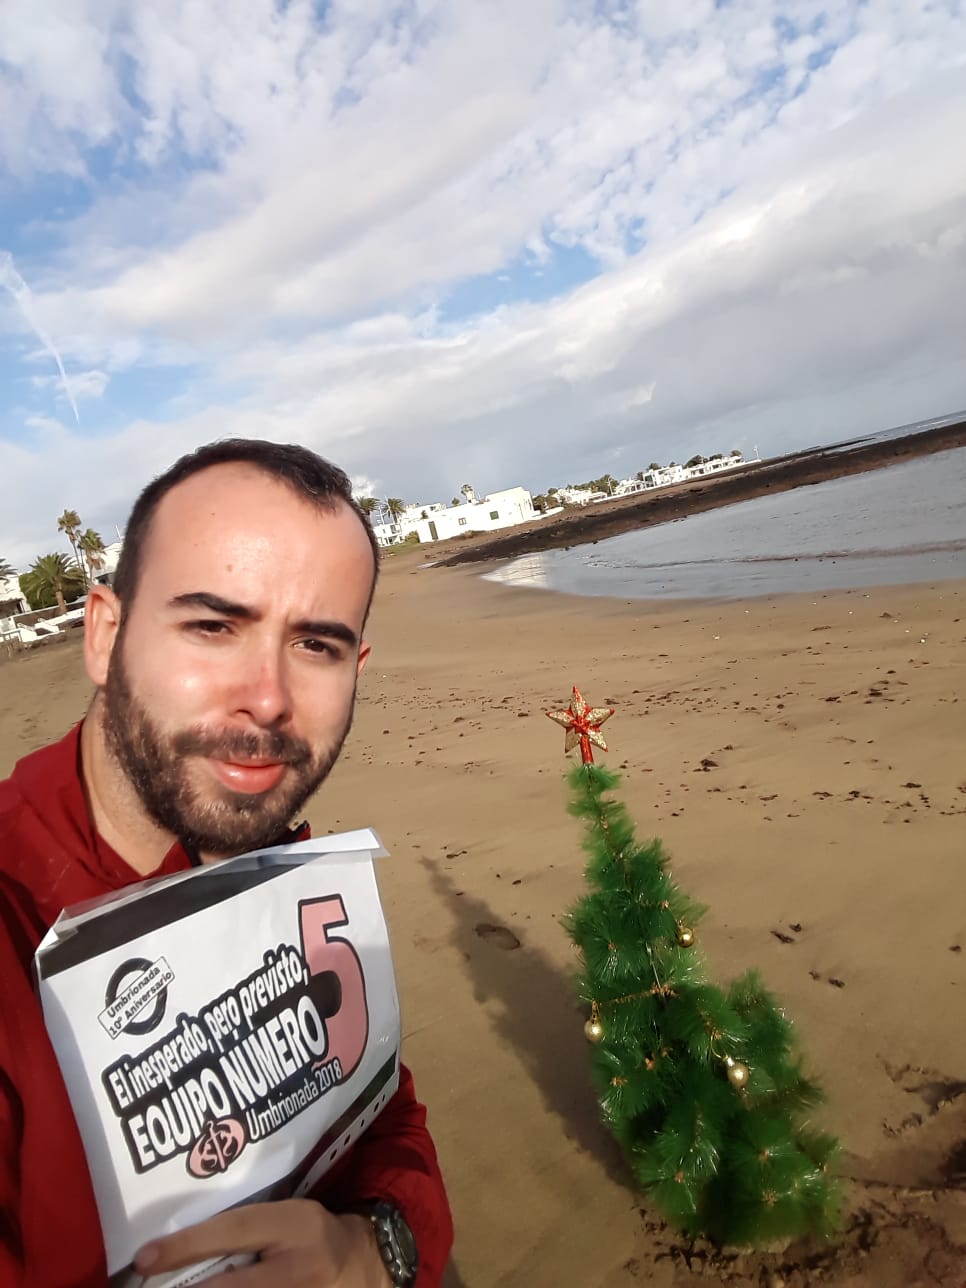 73. En una playa con un árbol de navidad. +1 si vas disfrazad@ de Papá Noel y aparecen los Reyes Magos.